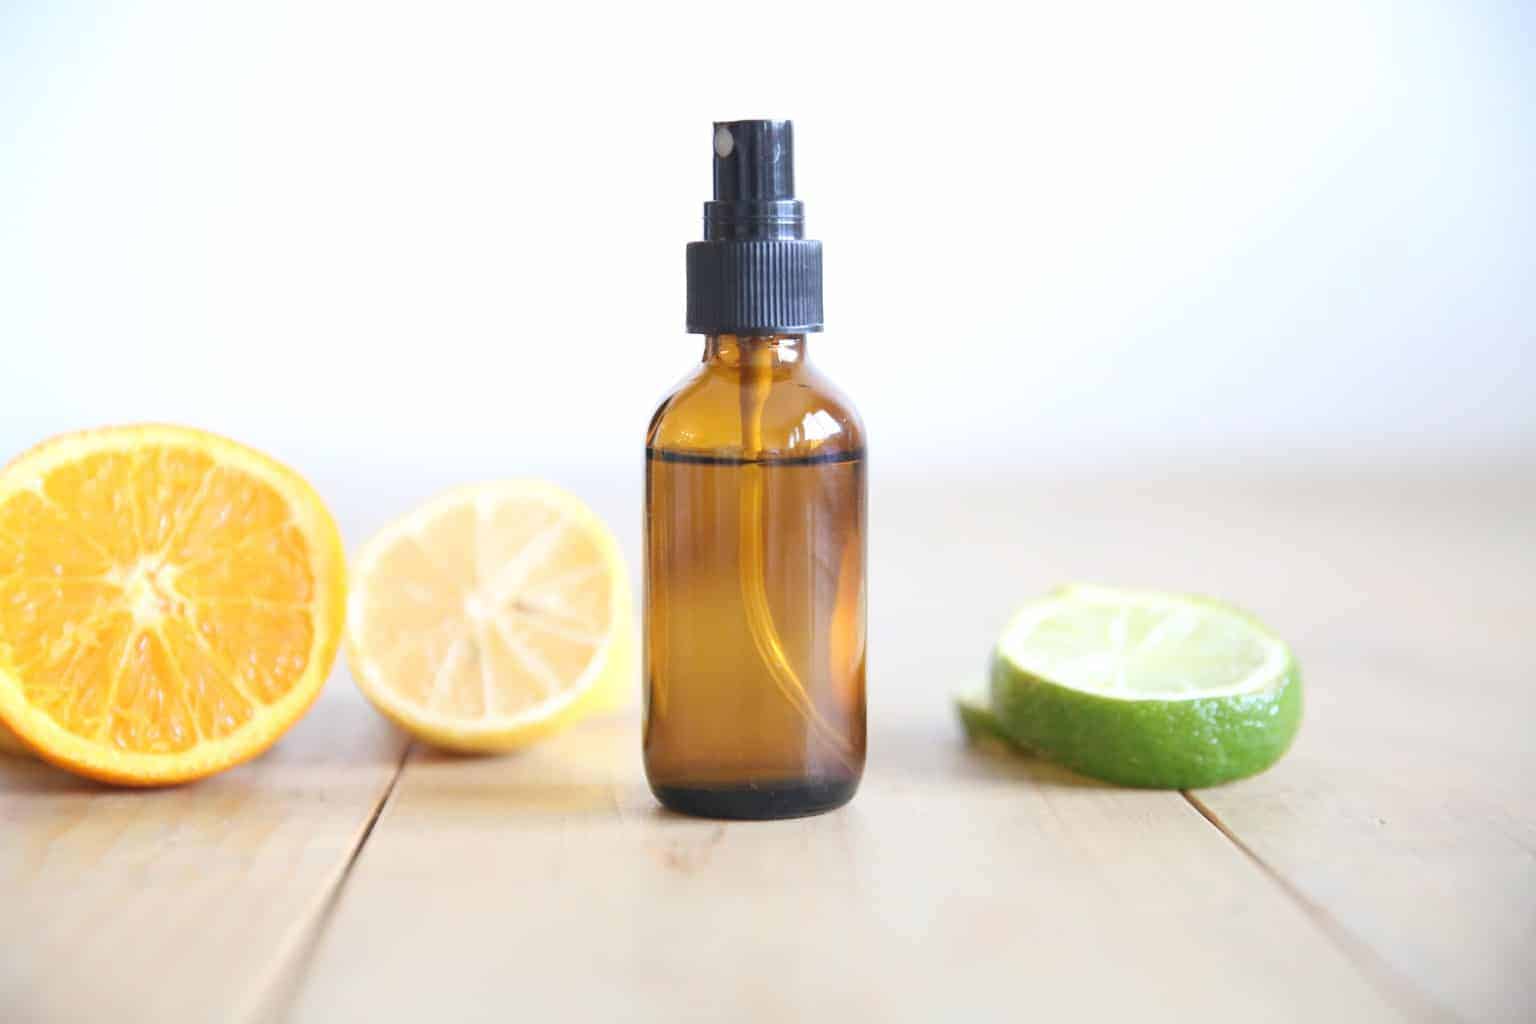 homemade citrus perfume in glass spray bottle